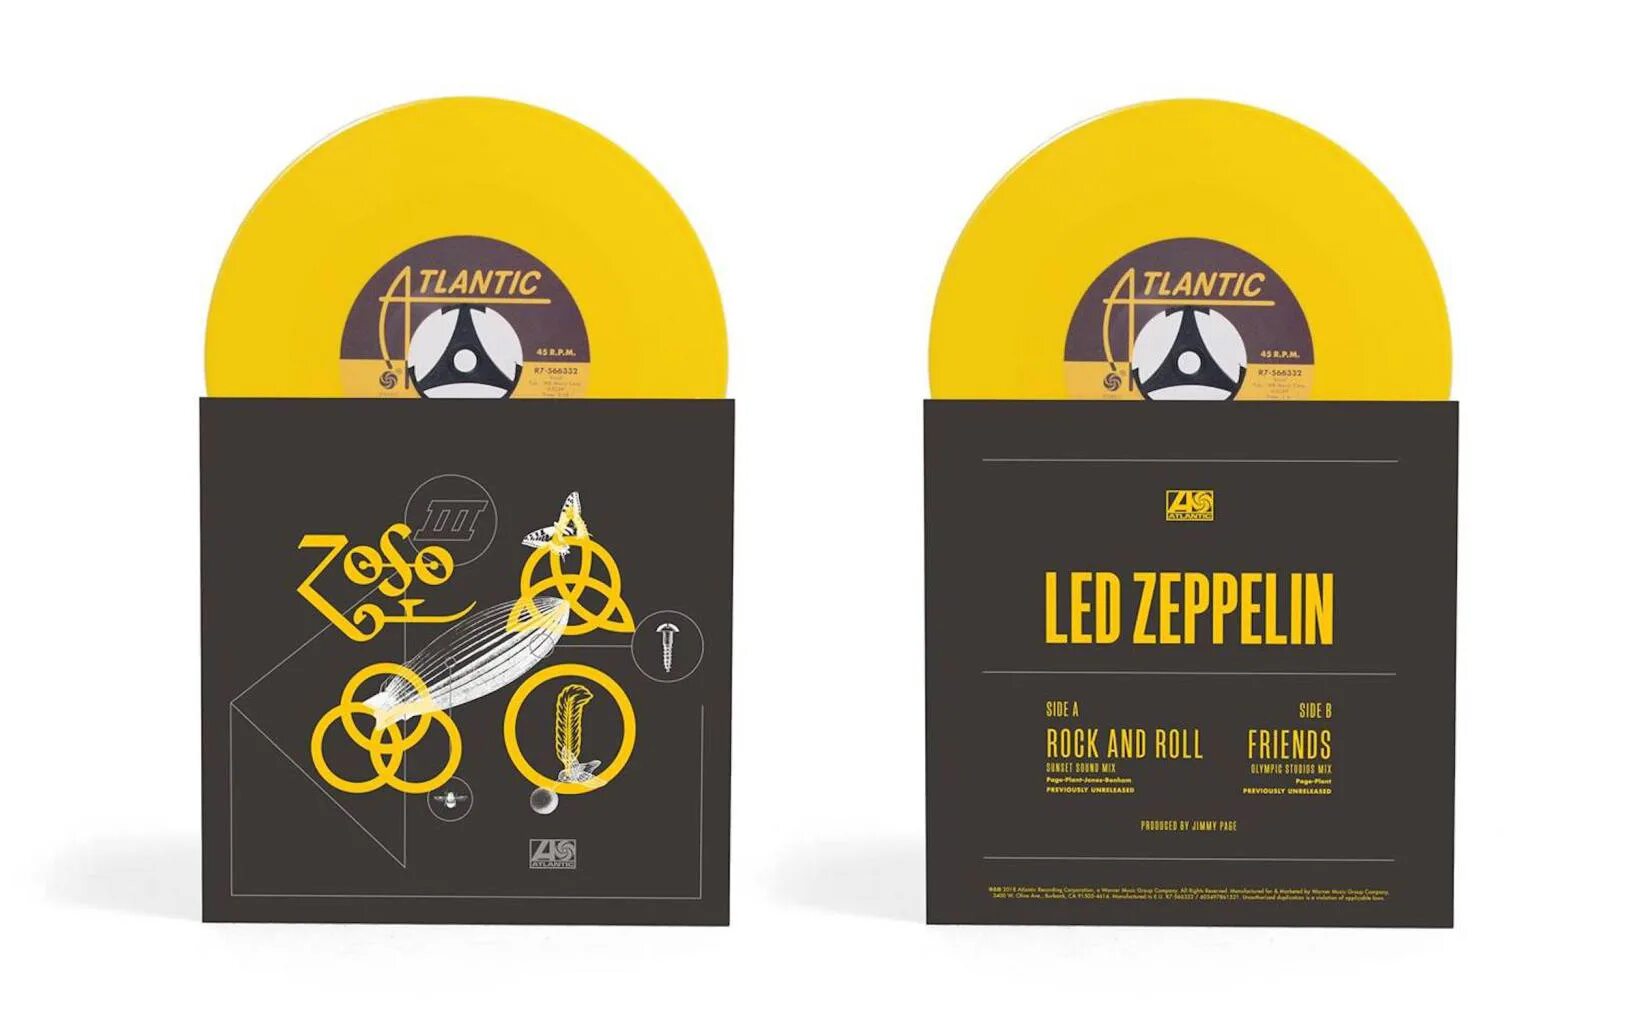 Led zeppelin rock and roll. Four Sticks led Zeppelin. Сигареты-led-Zeppelin Red. Идолы Rock n Roll led Zeppelin.